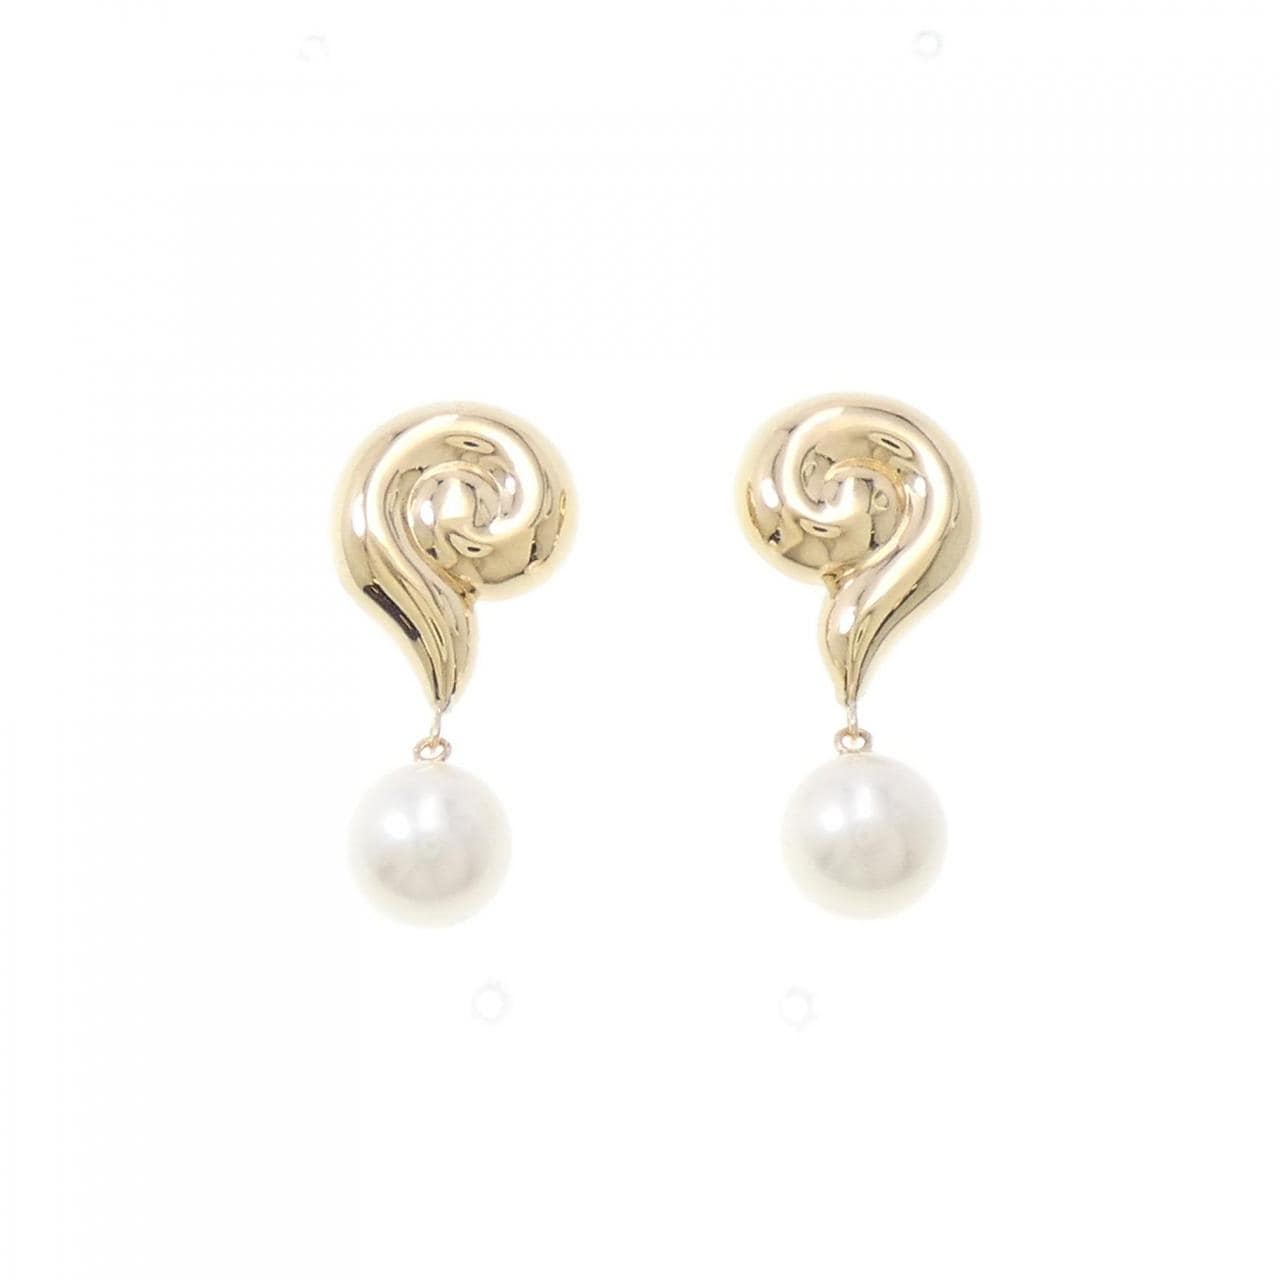 K18YG Akoya pearl earrings 7.6mm